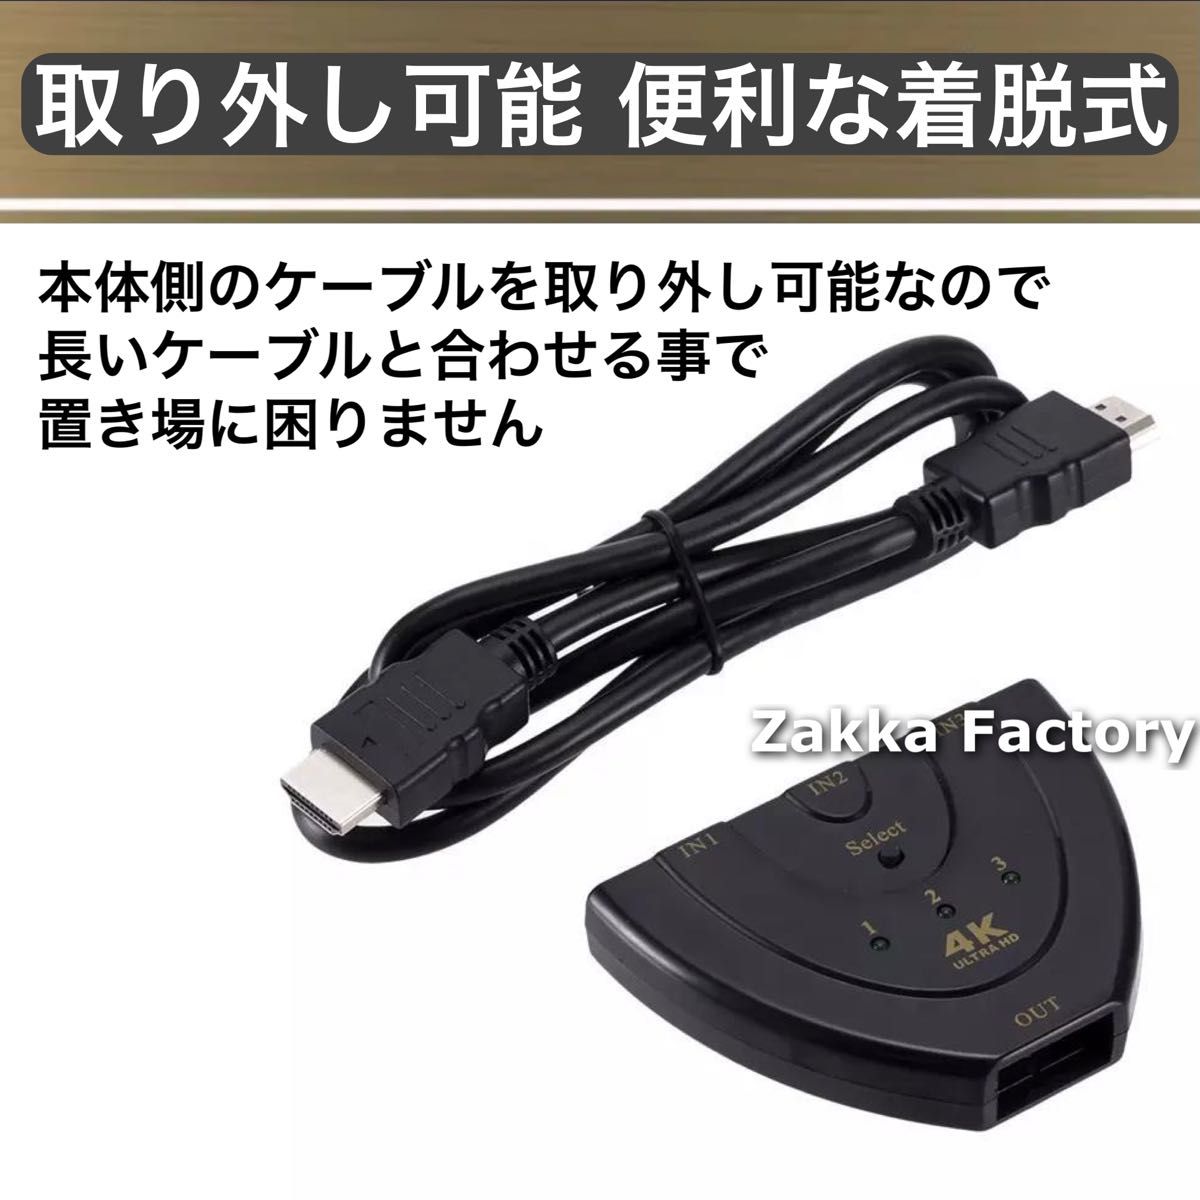 3.0m 着脱式 HDMIセレクター 切替器 分配器 ケーブル スイッチ Switch ゲーム 画面切替 テレビ モニター 対応